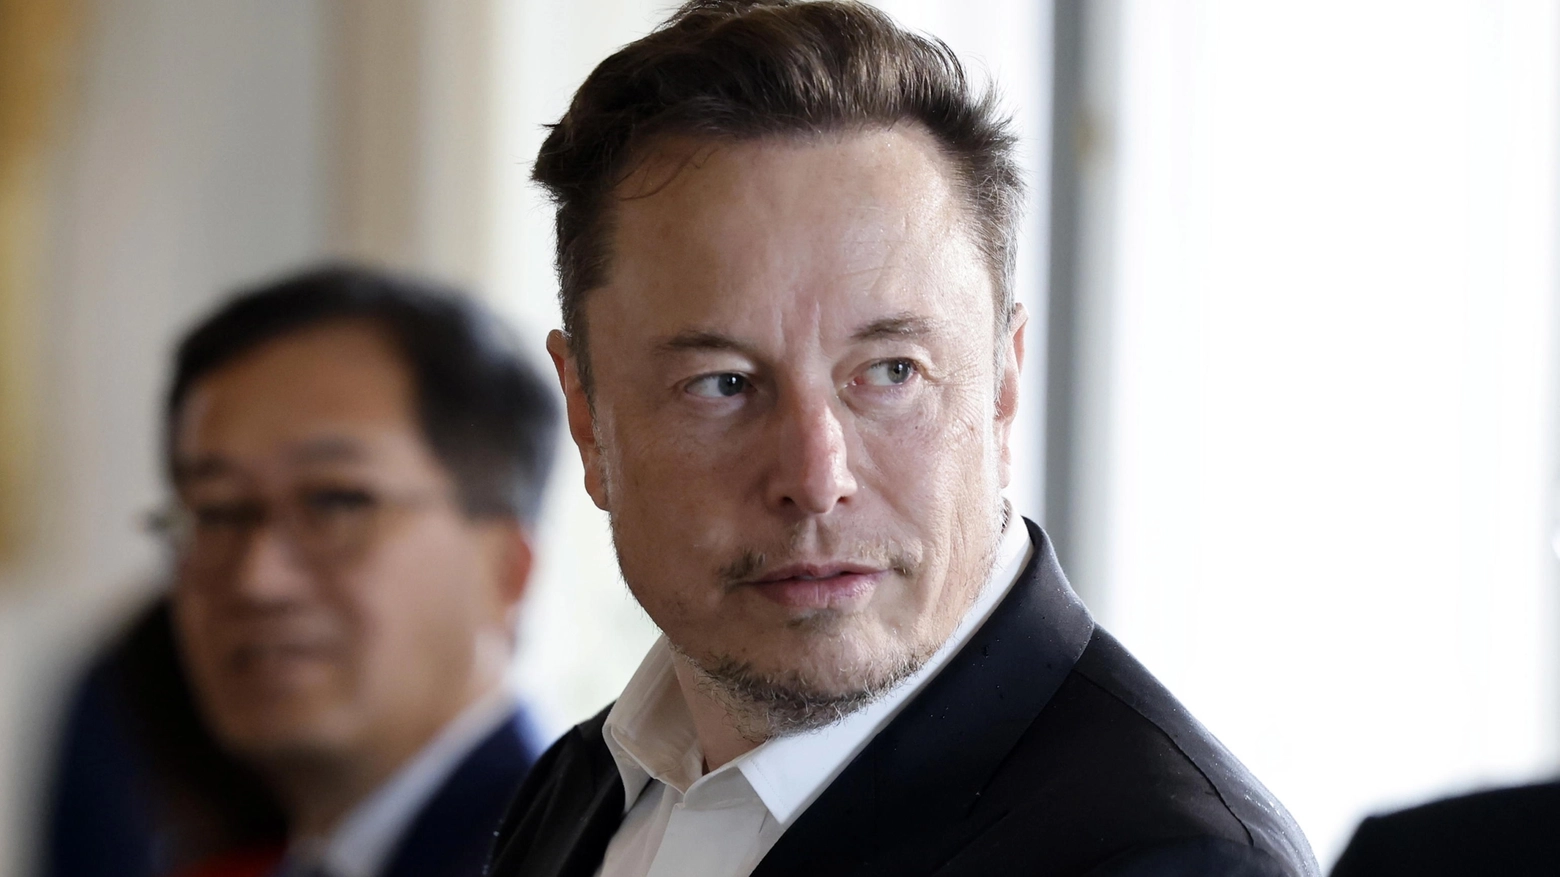 Le novità (temporanee) annunciate dal proprietario Elon Musk. Cosa cambia